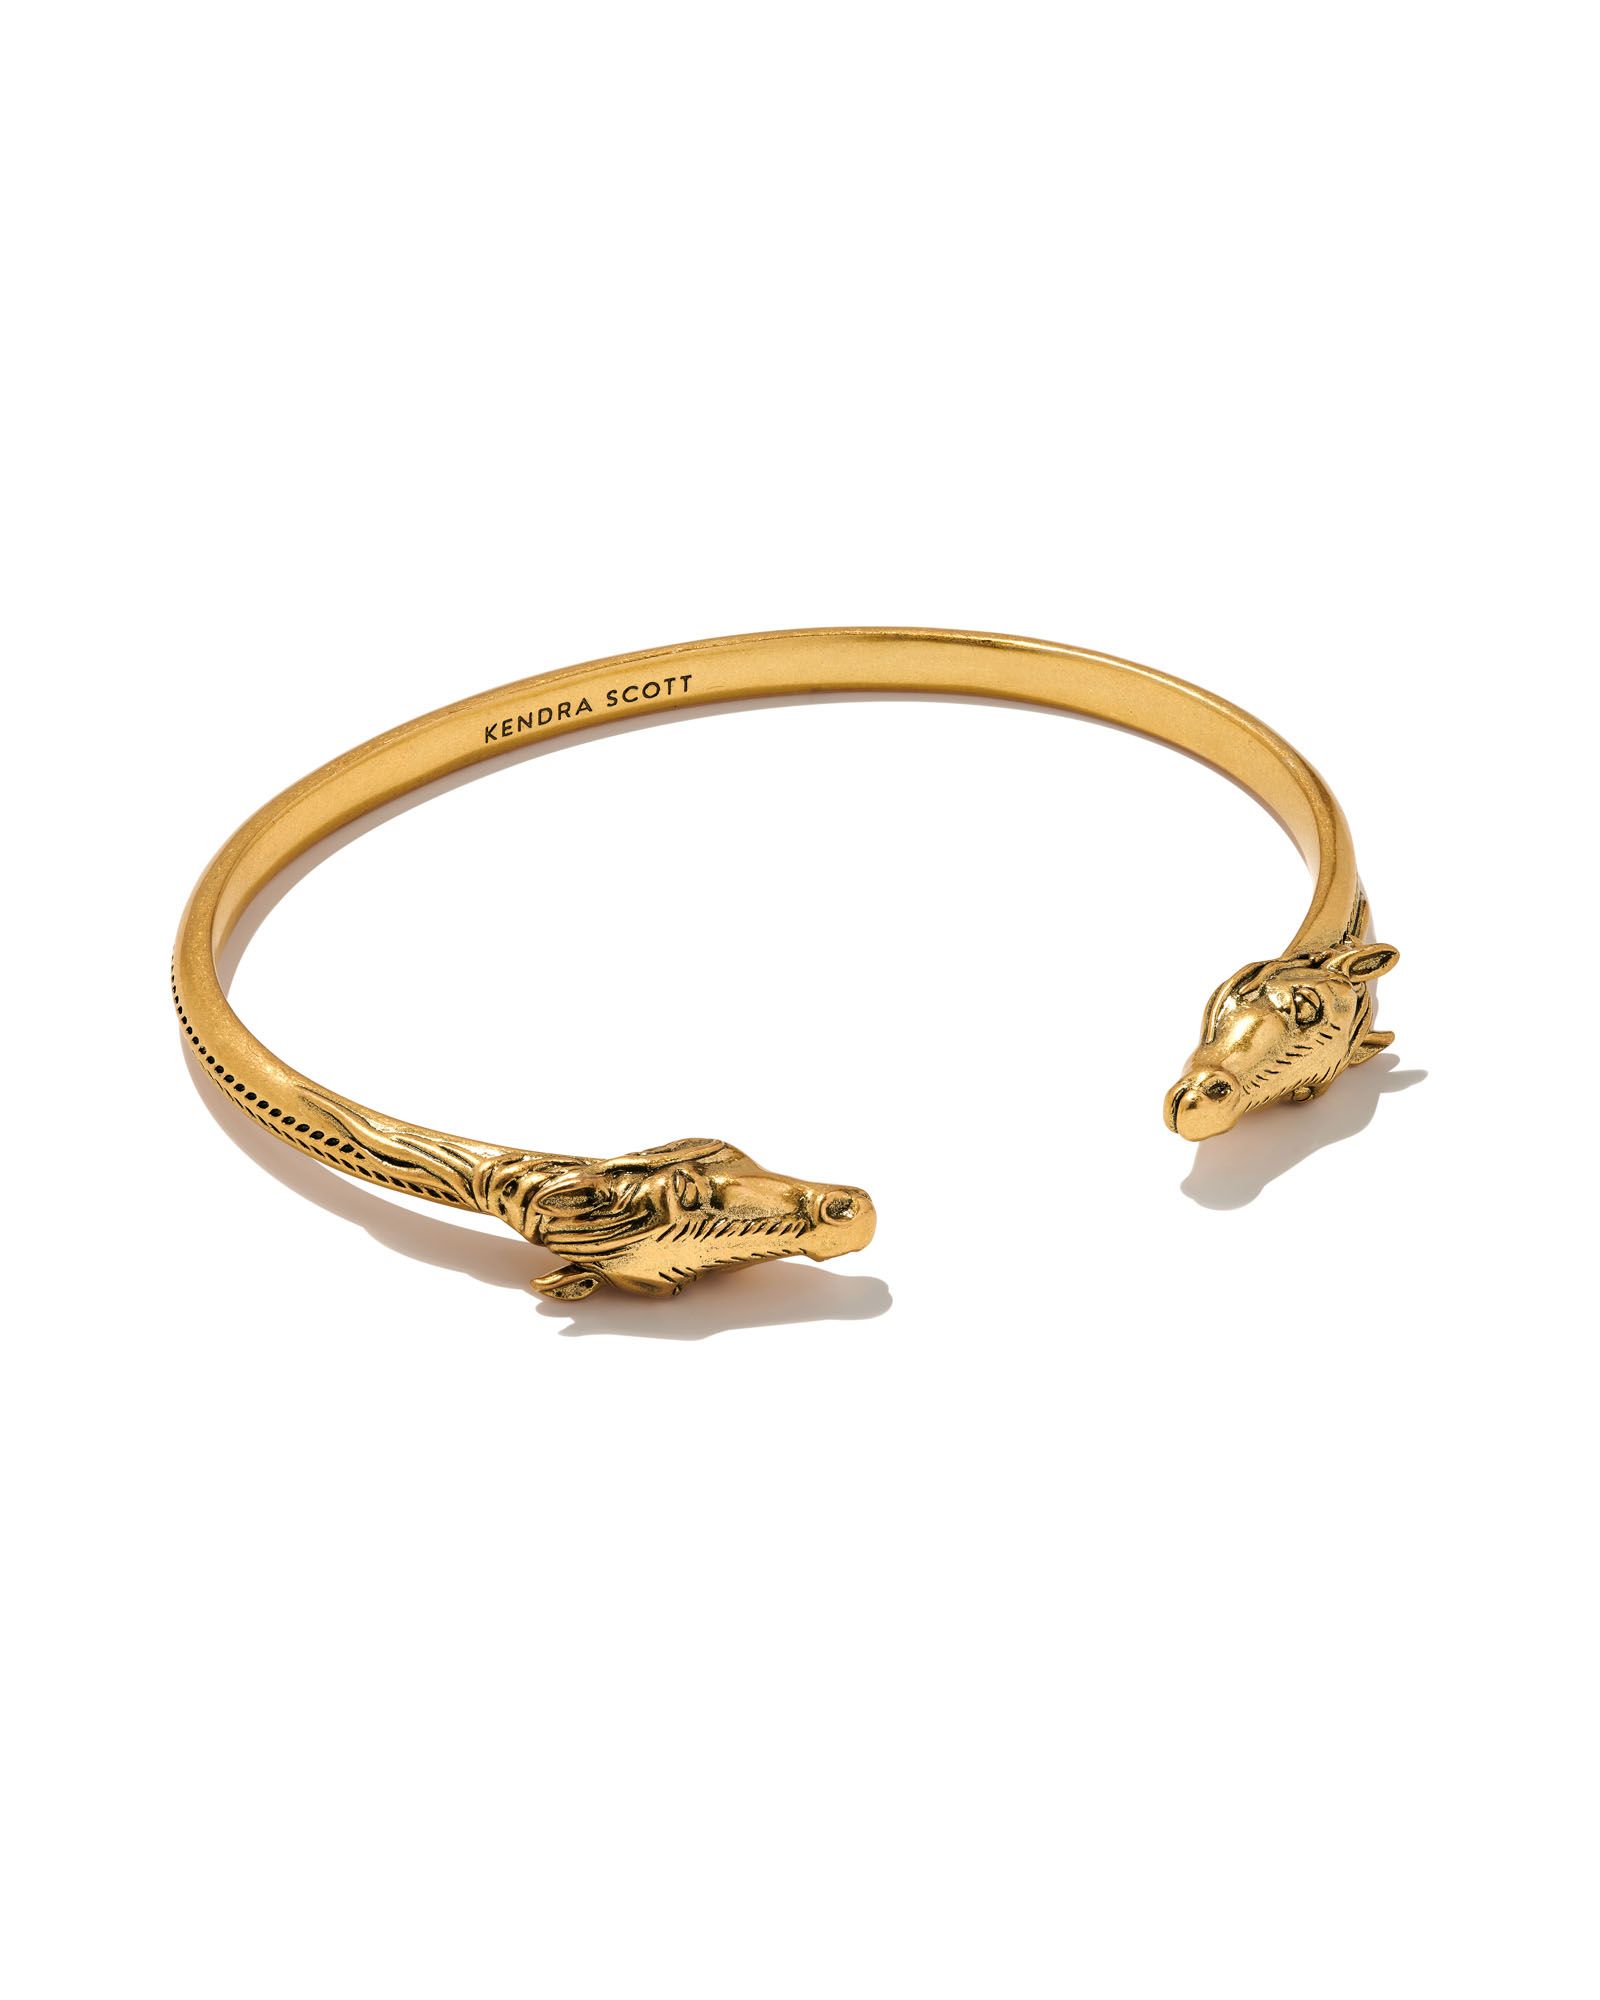 Beau Cuff Bracelet in Vintage Gold | Kendra Scott